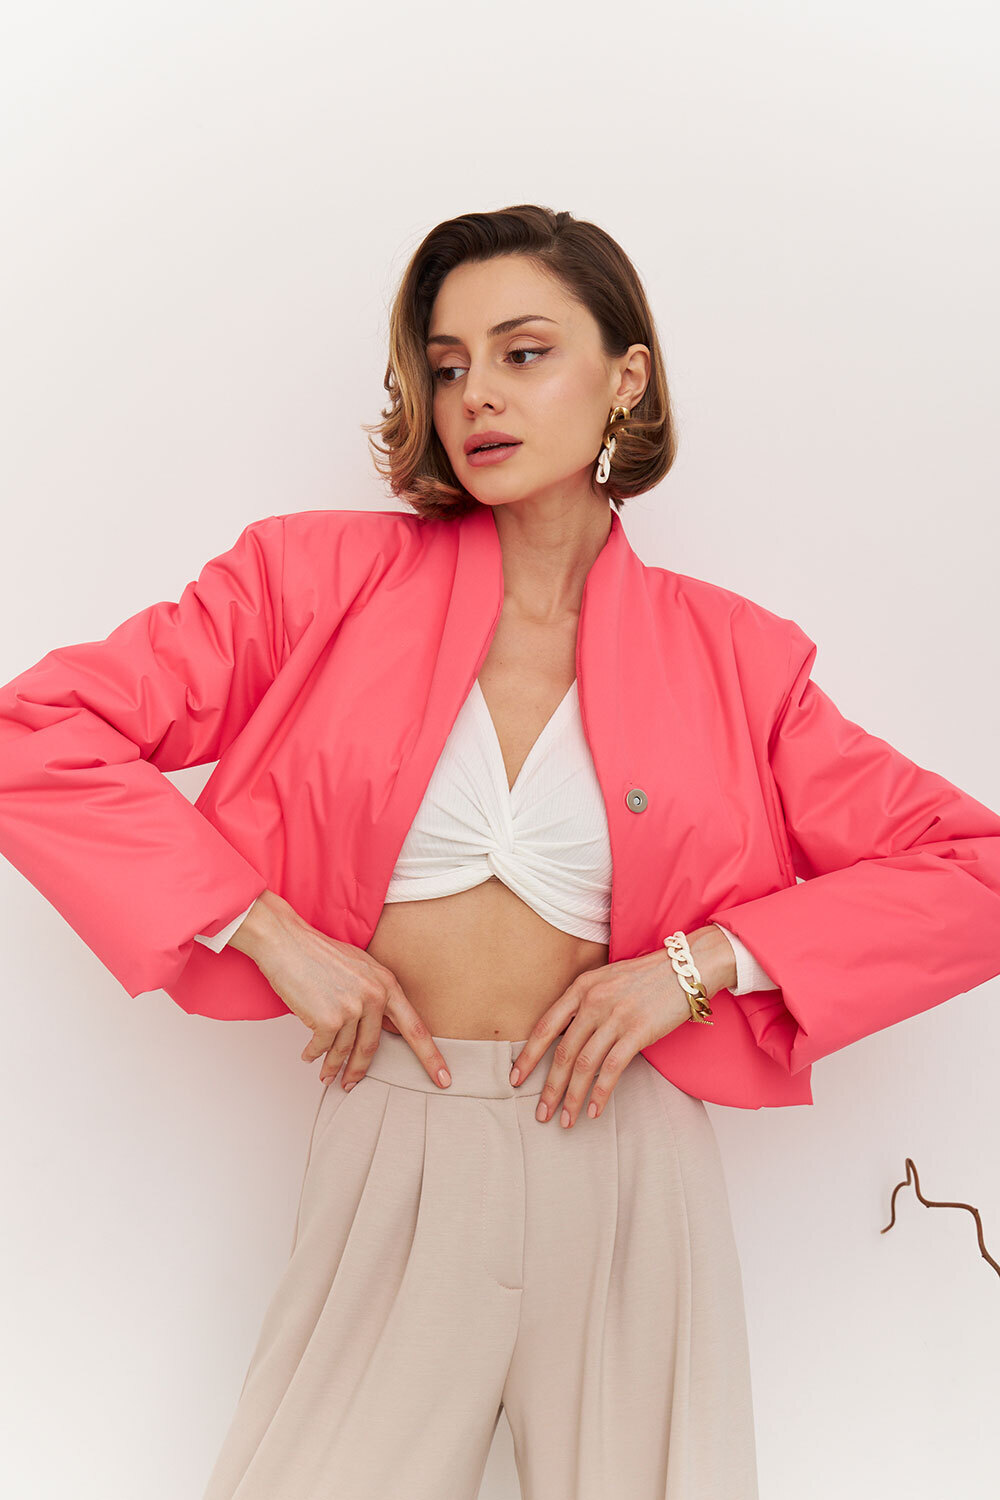 

Куртка с подплечниками ярко-розового цвета, Розовый, Куртка с подплечниками ярко-розового цвета